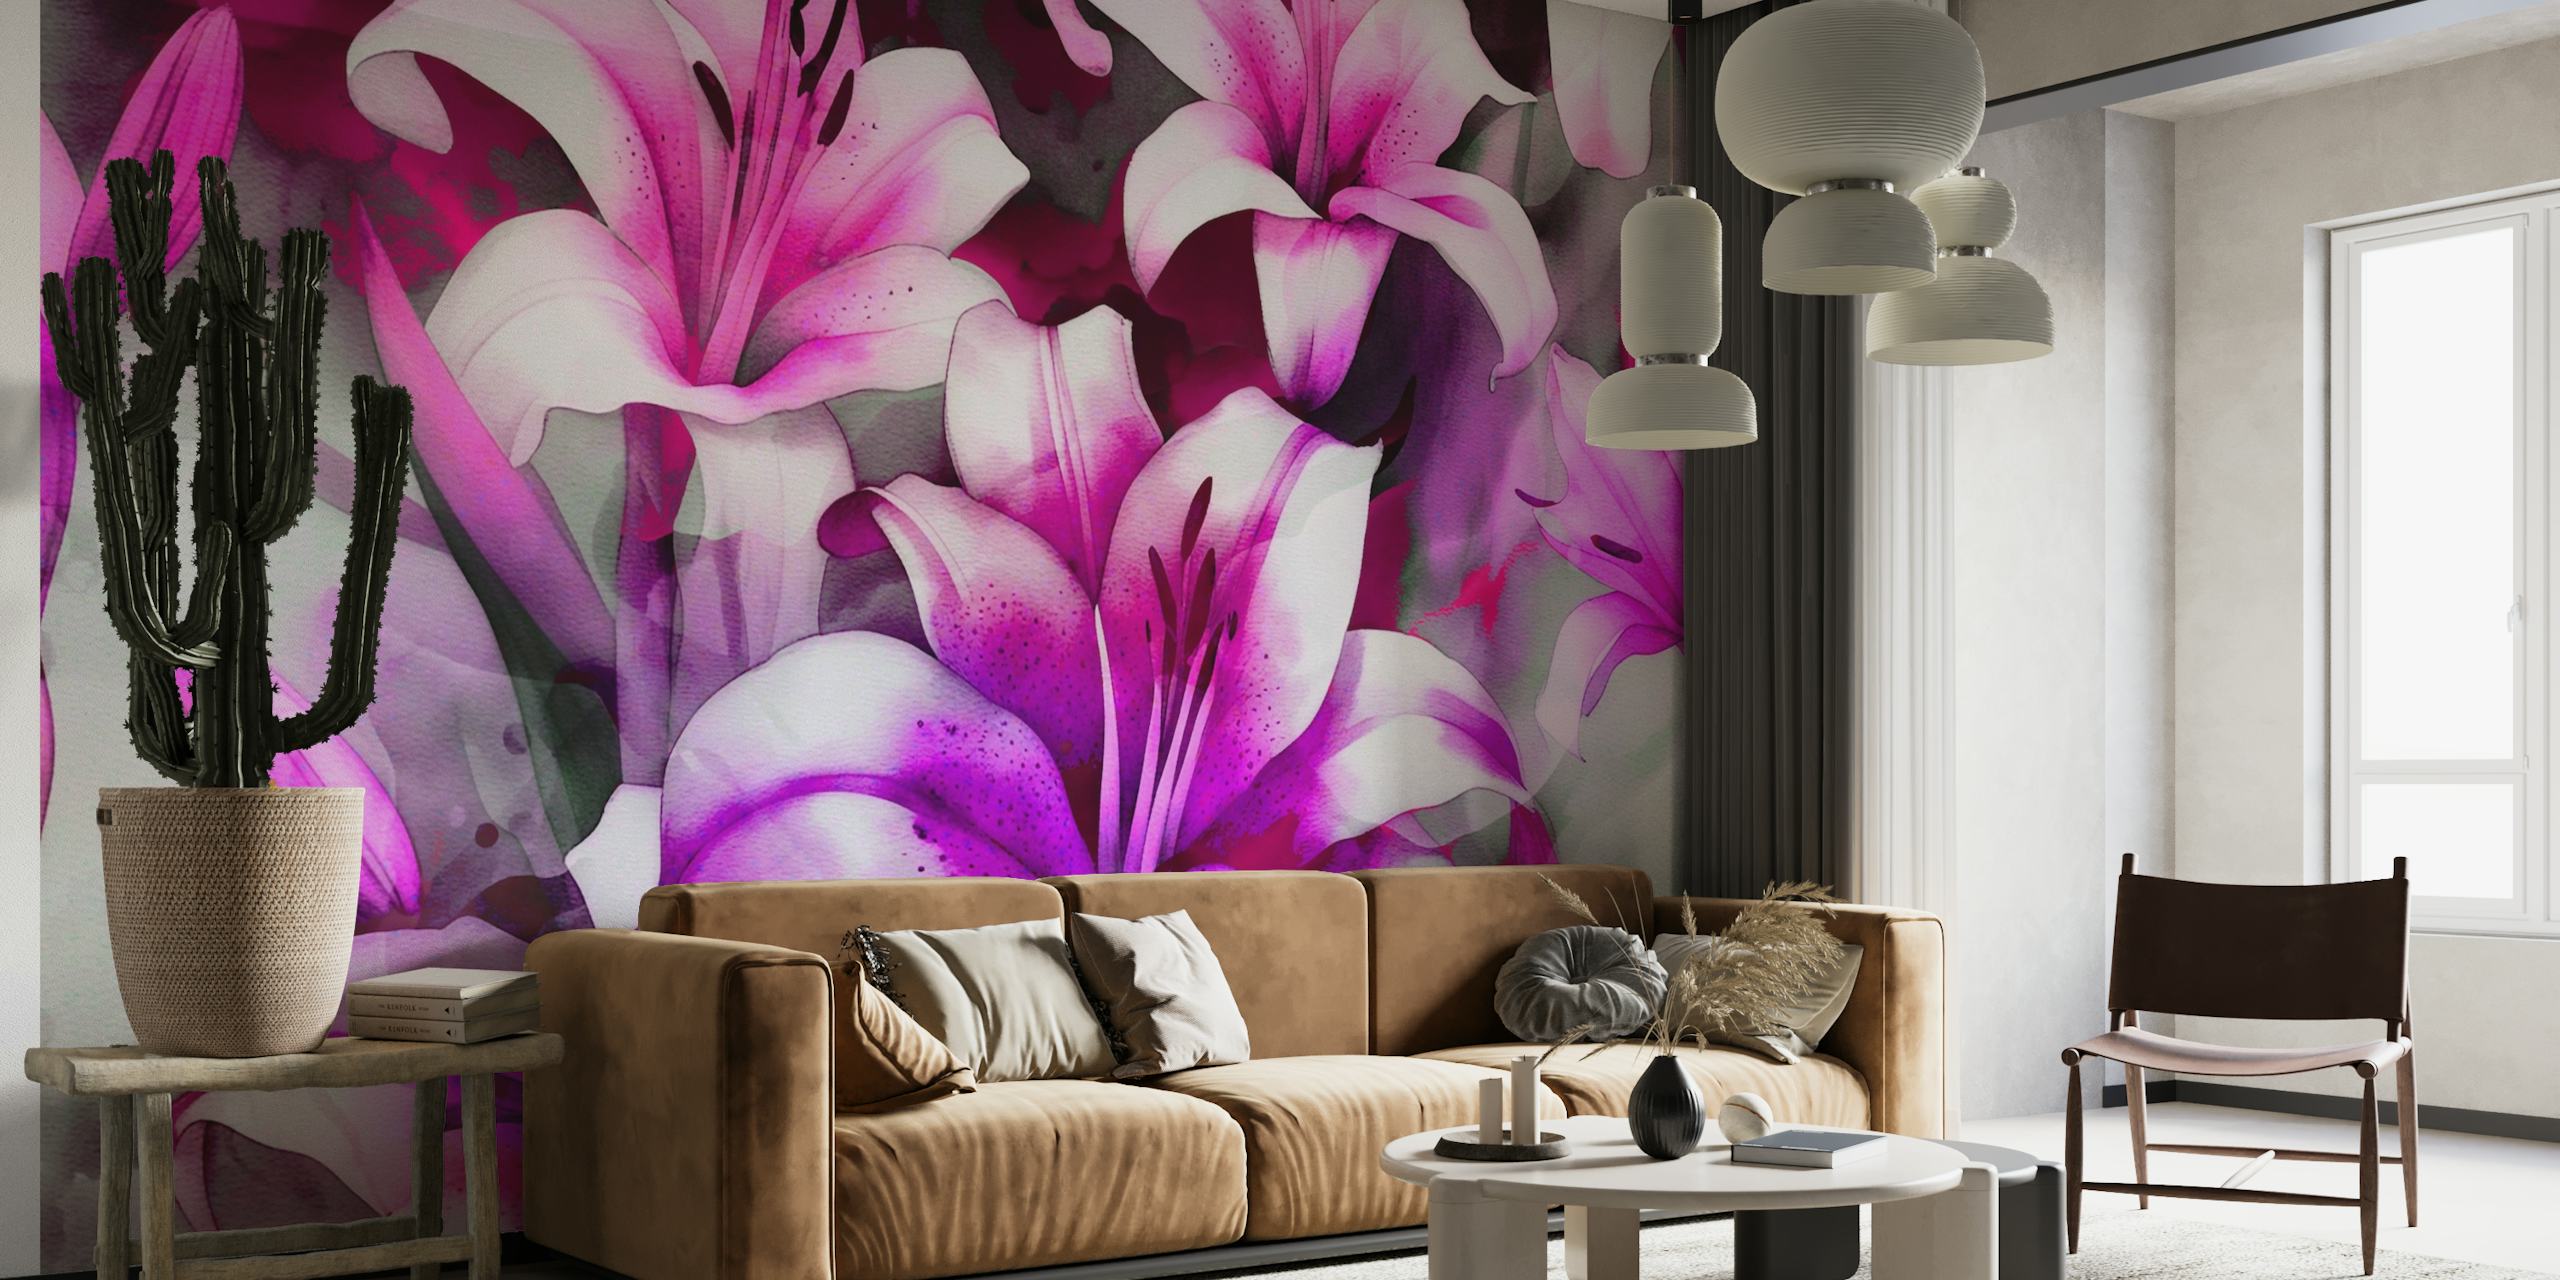 Abstrakt akvarel vægmaleri af lyserøde og lilla liljer med en drømmende æstetik